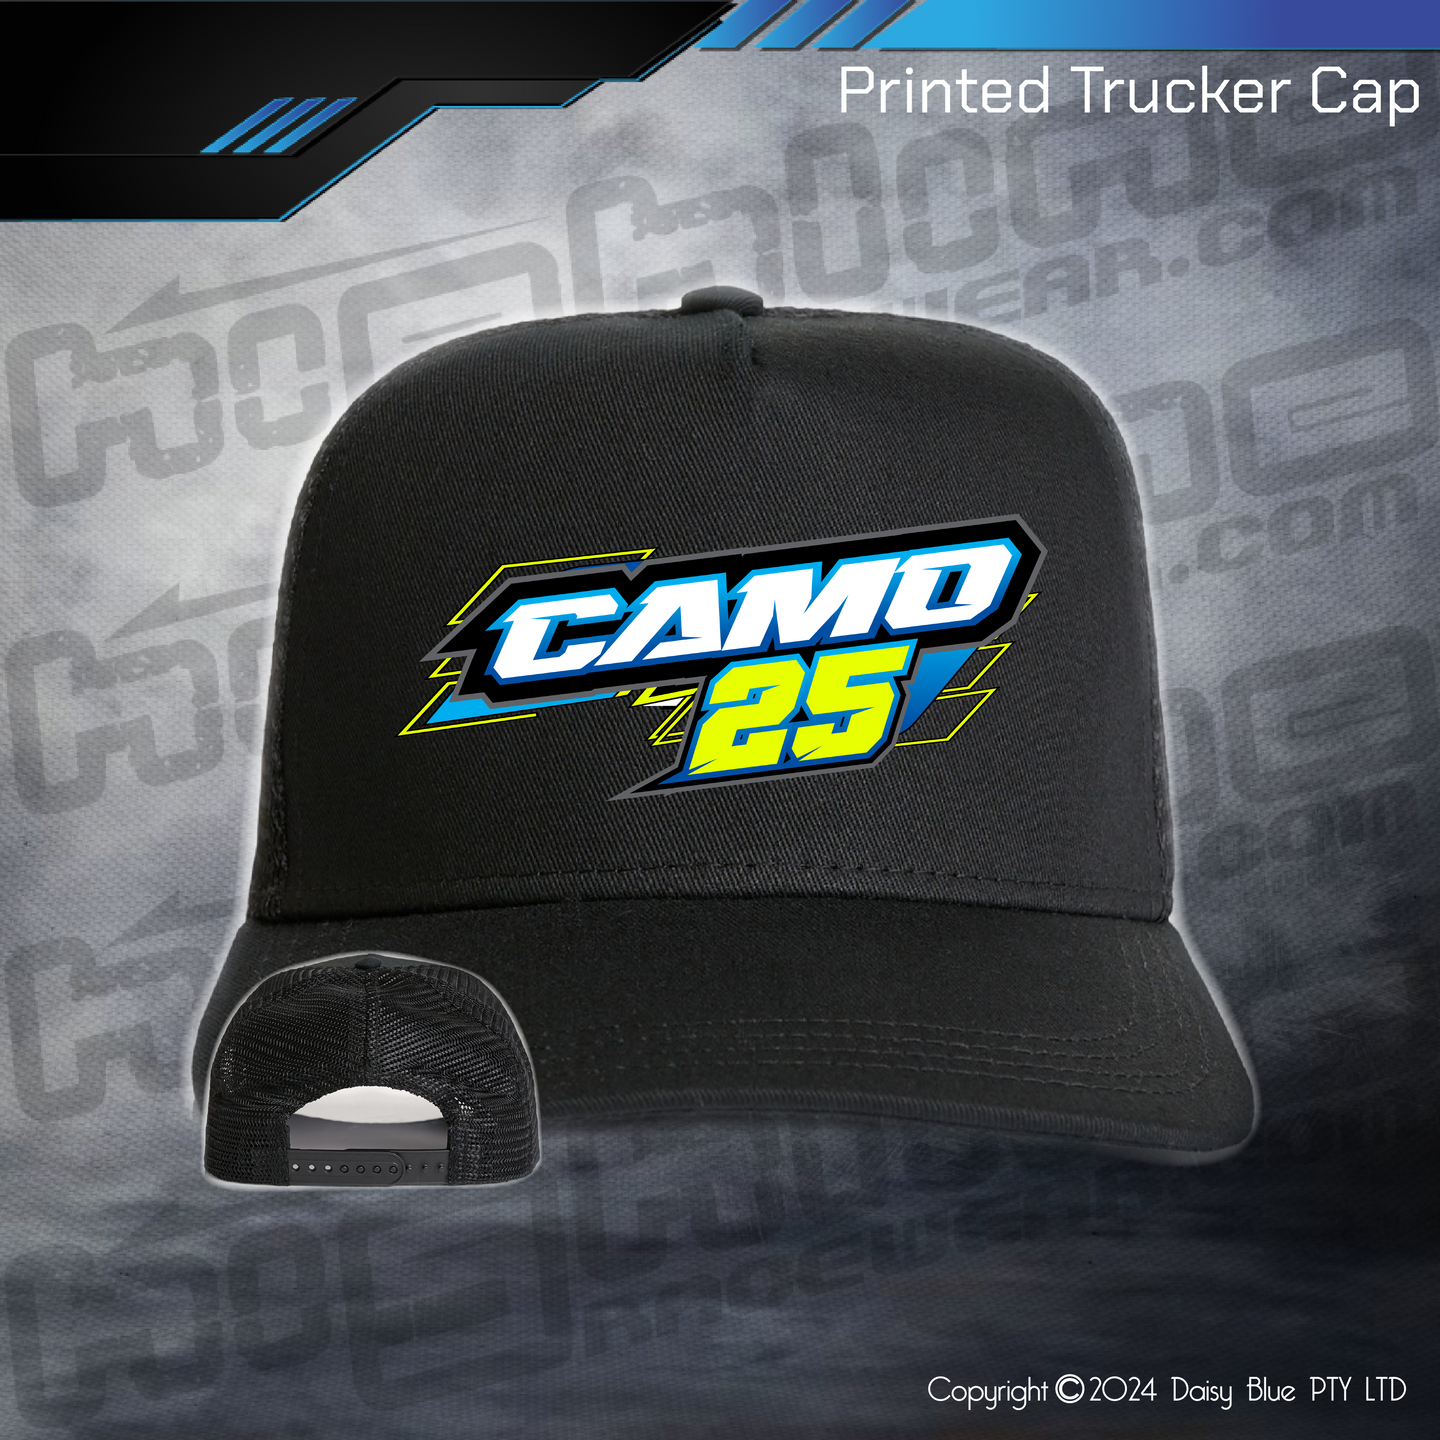 Printed Trucker Cap - Cameron Dike